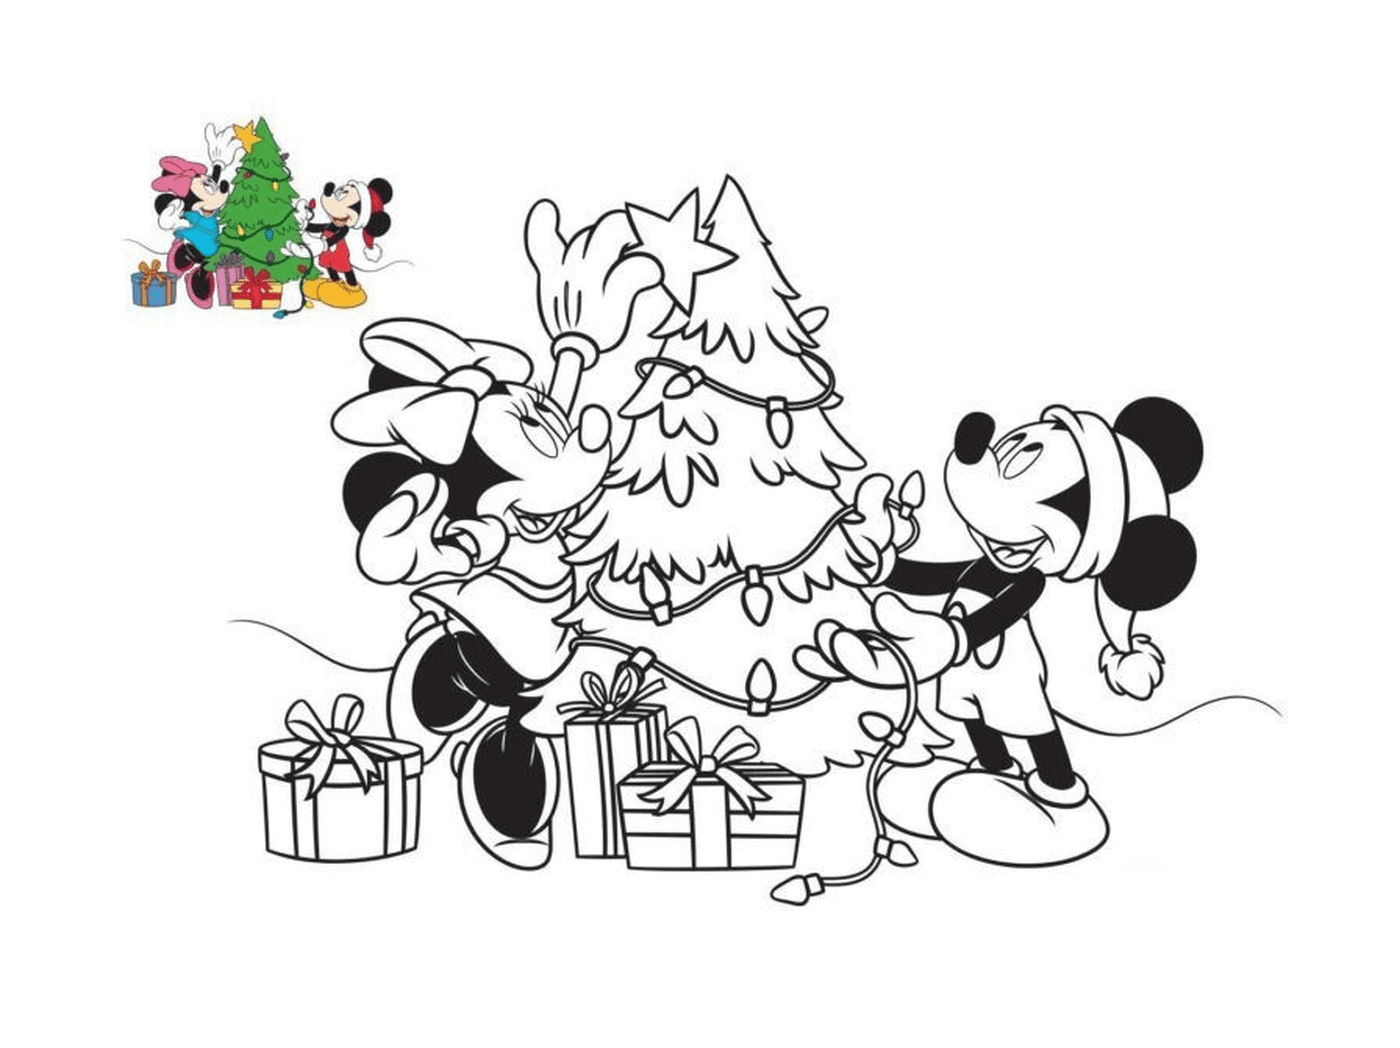  Mickey e Minnie decoram a árvore 